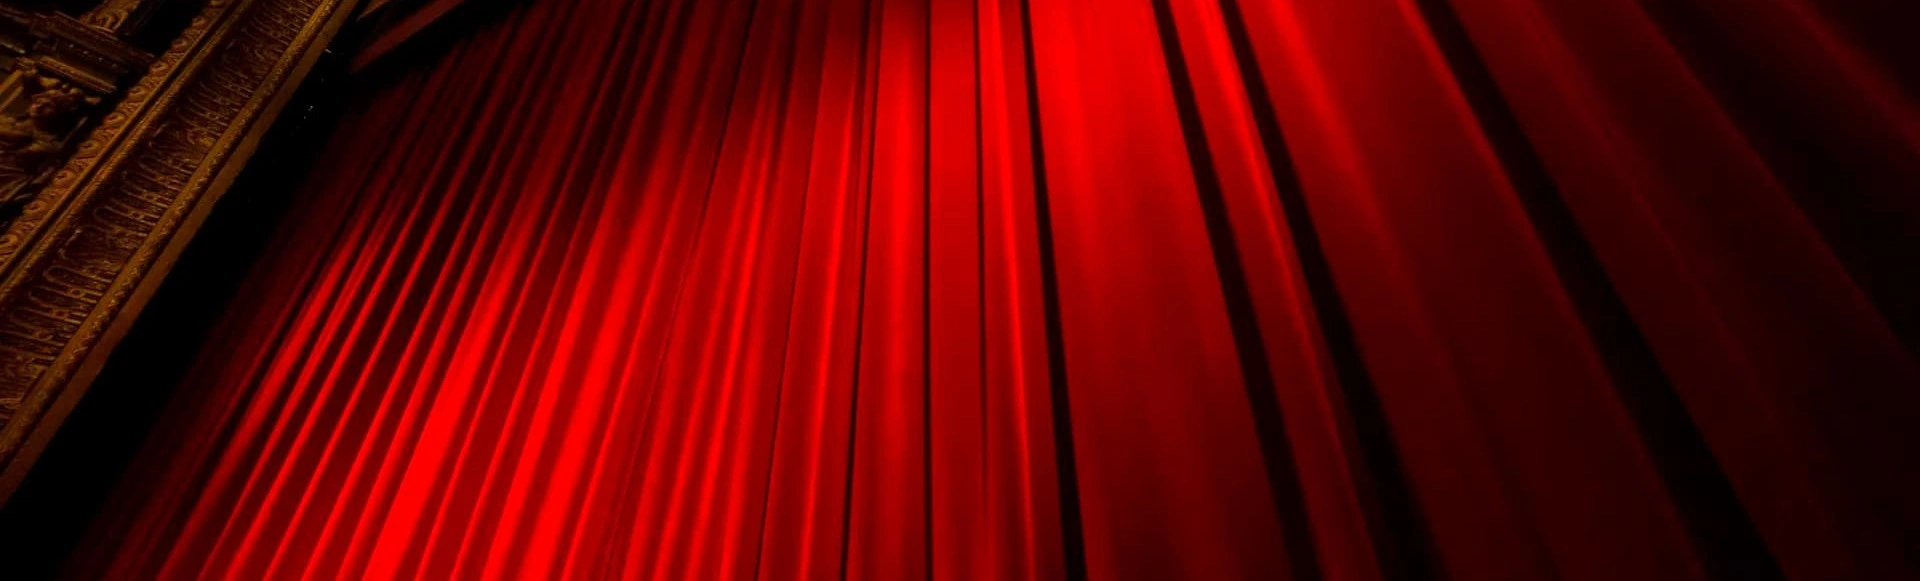 Международный театральный фестиваль им А.П. Чехова представит индийский «Макбет»
